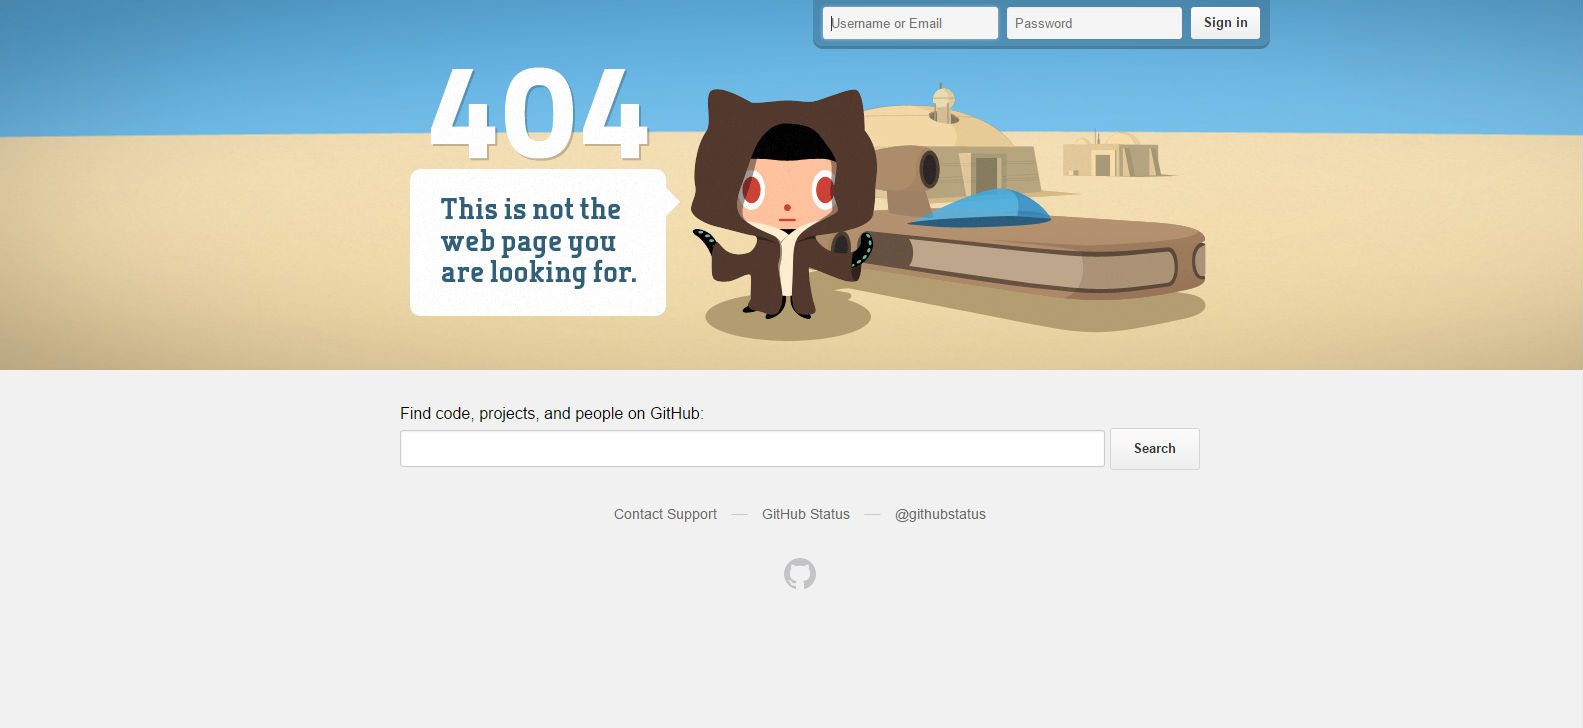 Github 404 page